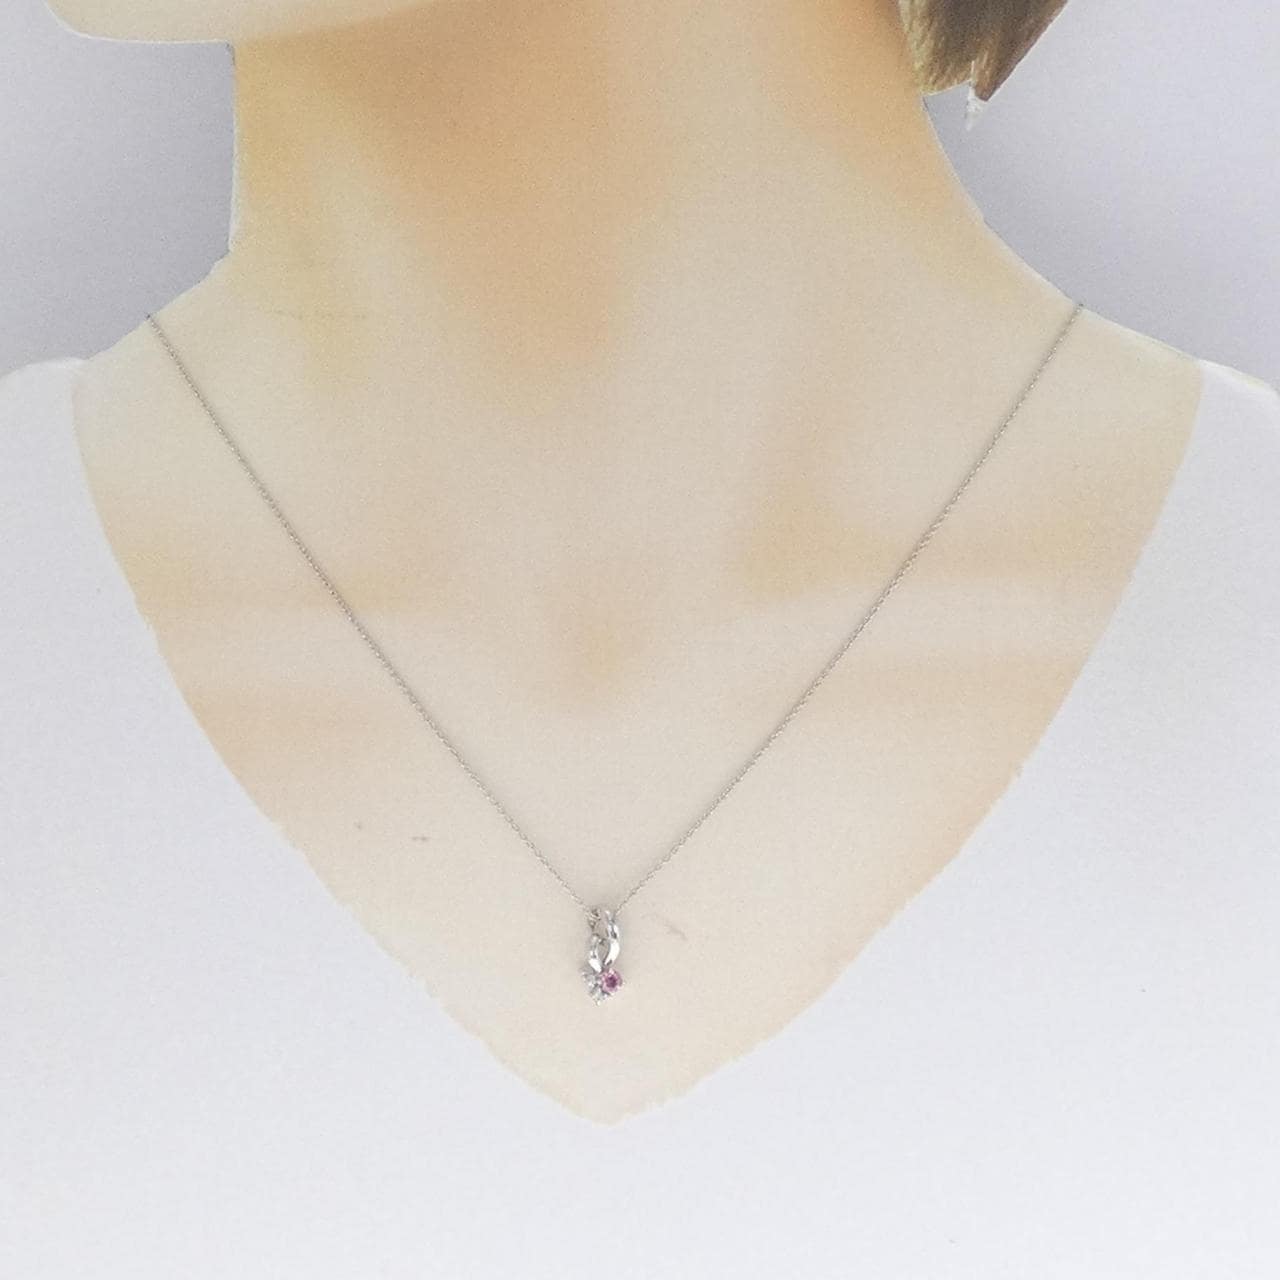 PT Tourmaline necklace